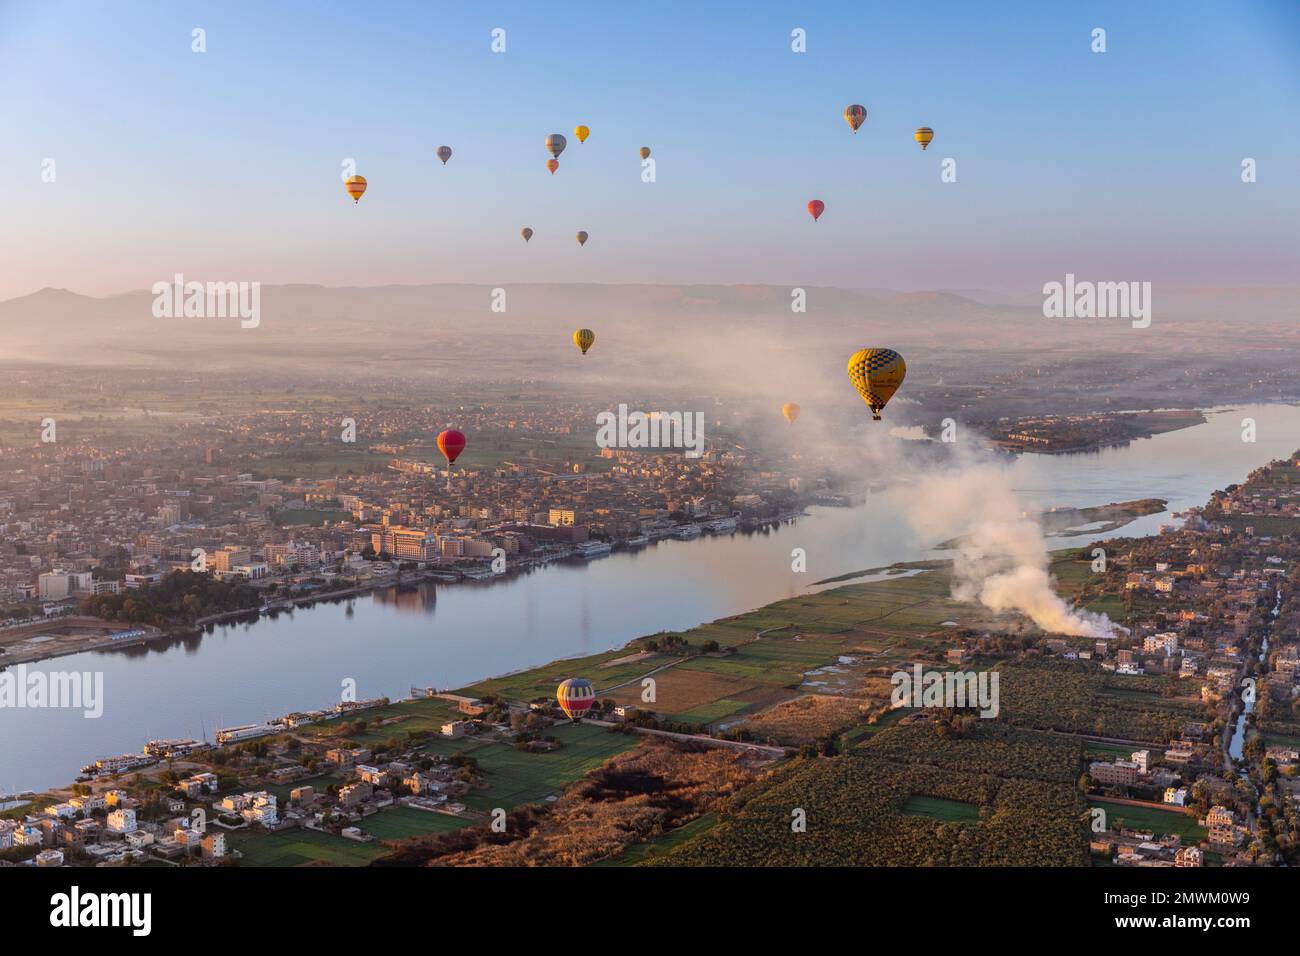 Globos aerostáticos sobre el río Nilo durante el amanecer en Luxor, Egipto Foto de stock